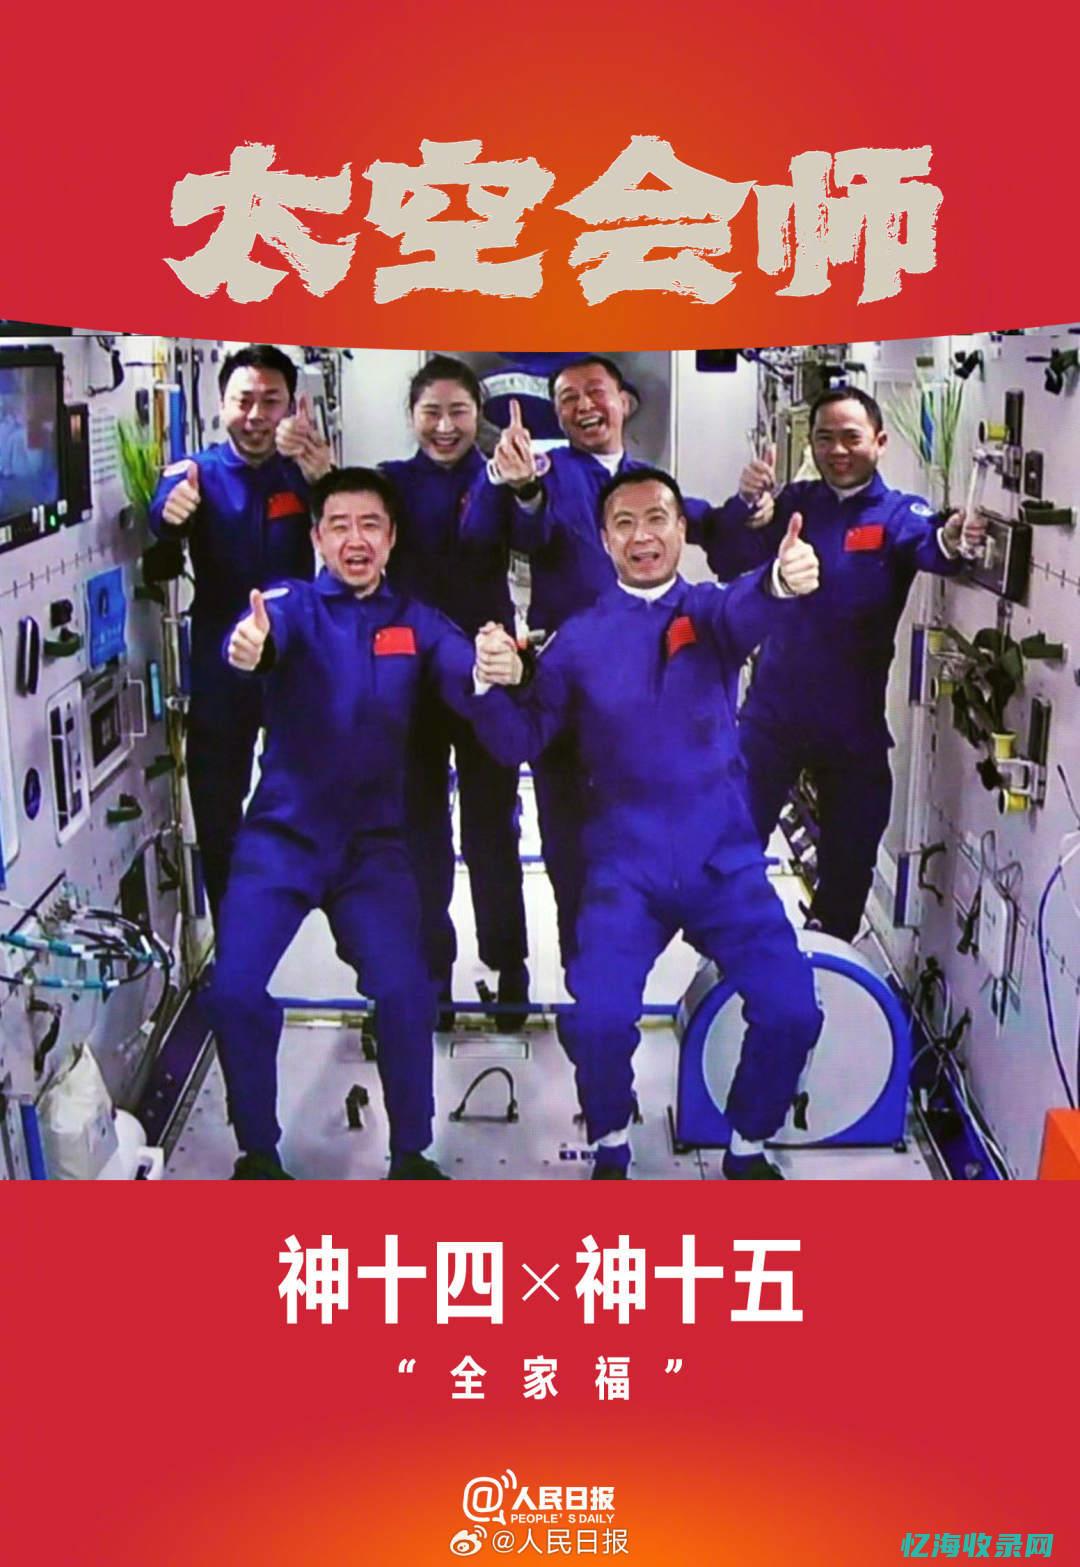 每张都是梦想的接力-中国航天员有了4张太空6人合影 (每张都是梦想的脸)